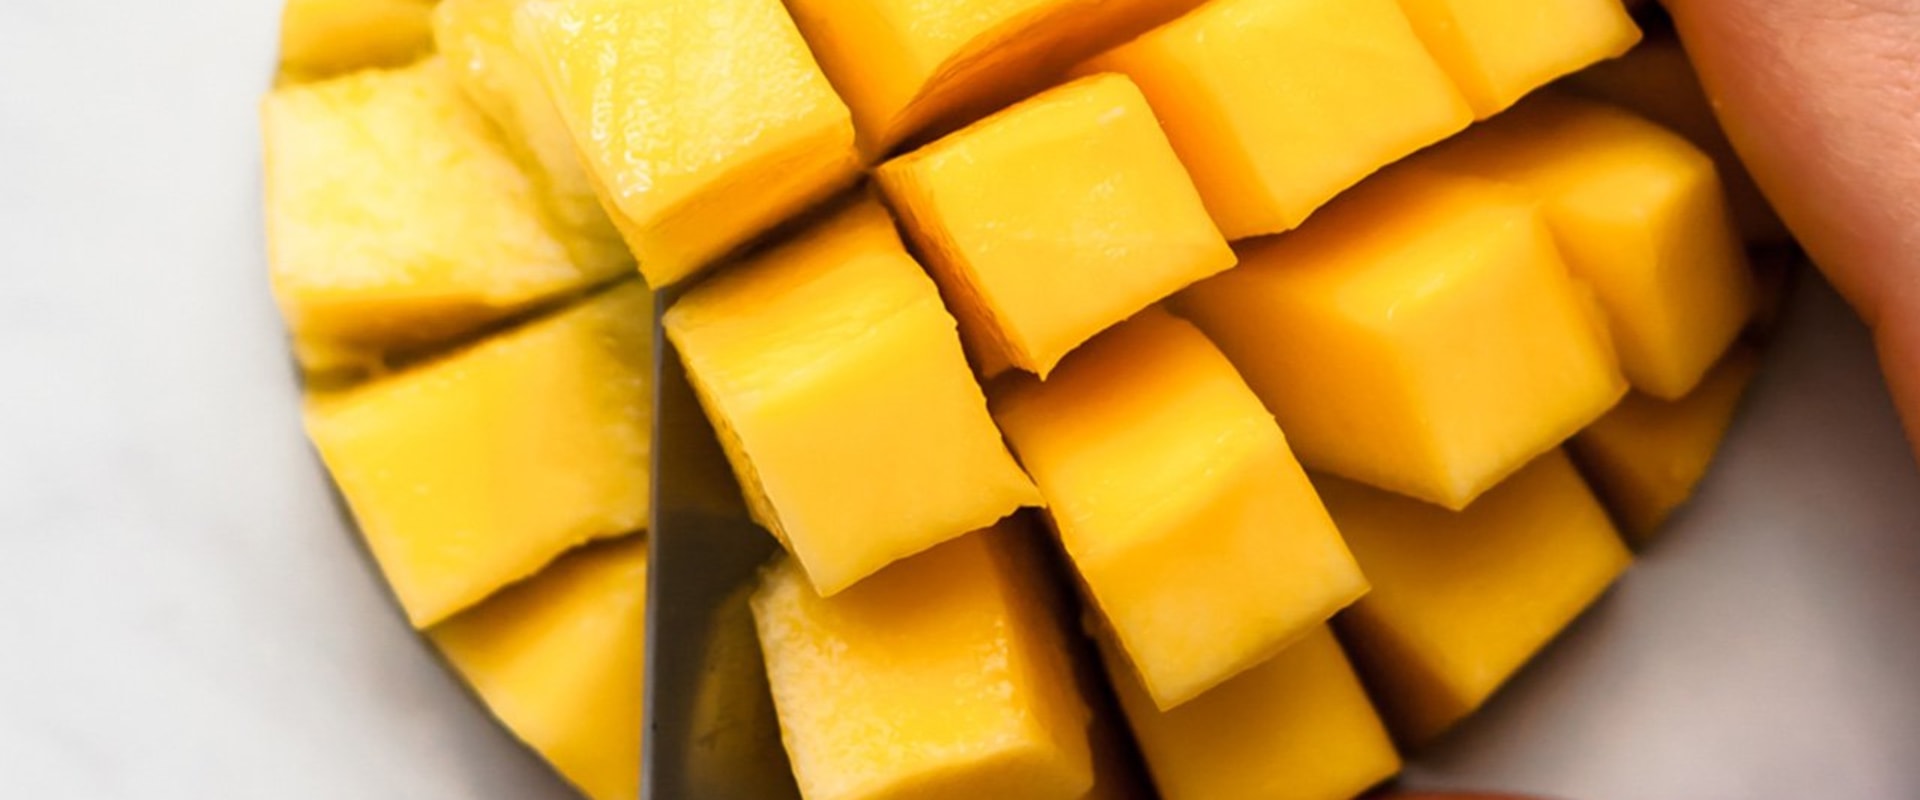 Creative Ways to Use Slices of Whole Raw Mango